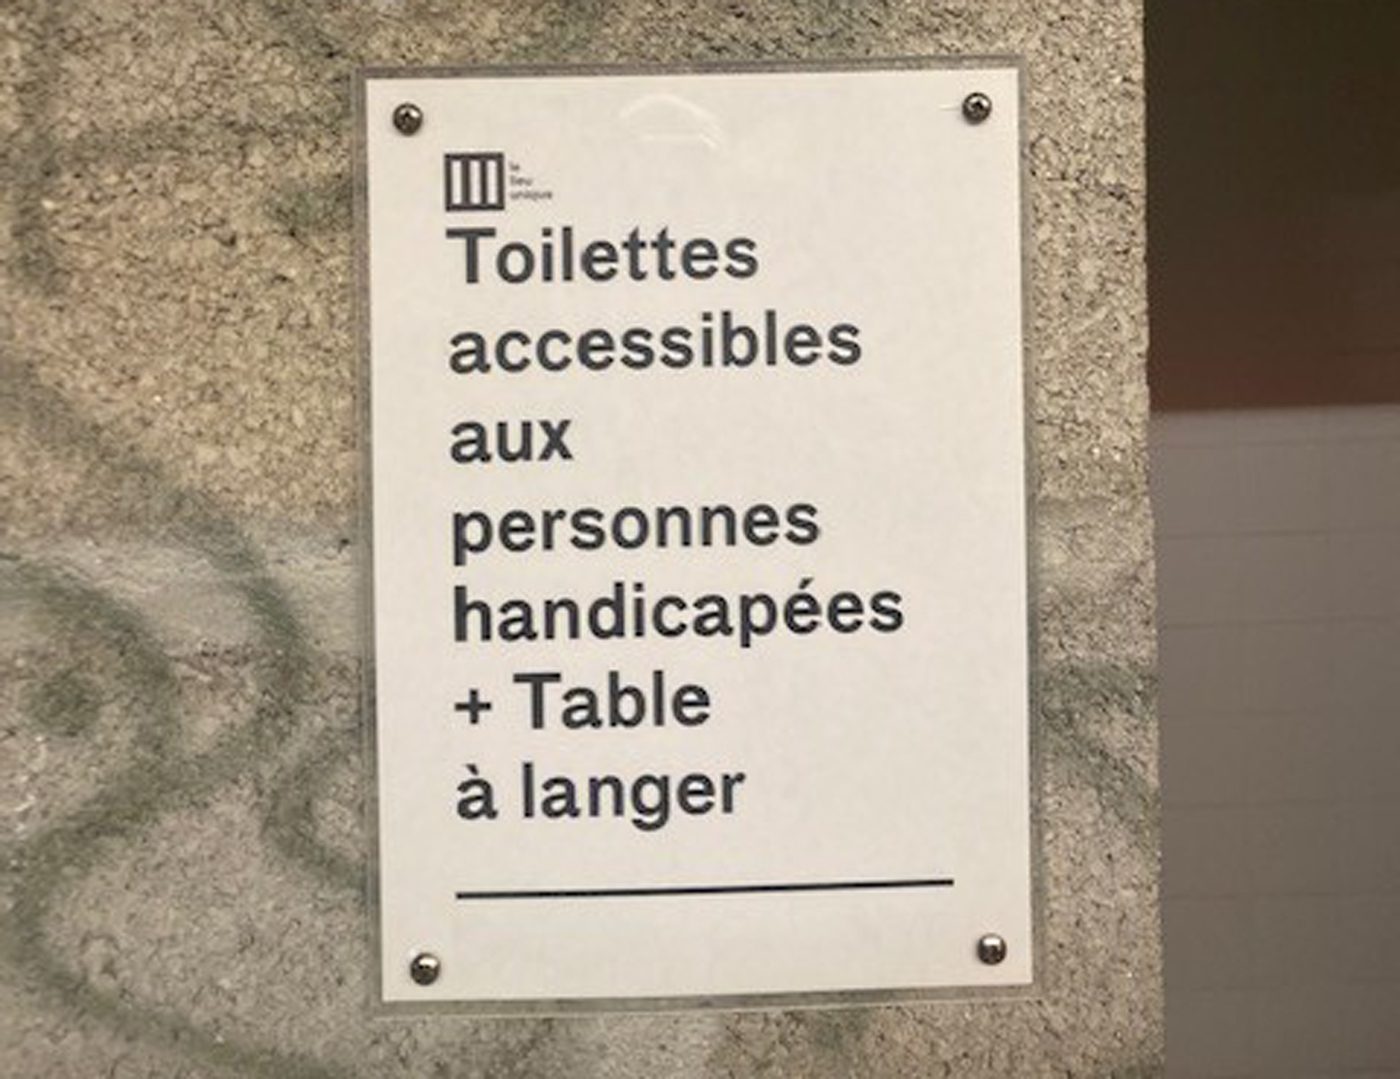 ICI-Toilettes-LeLieuUnique2